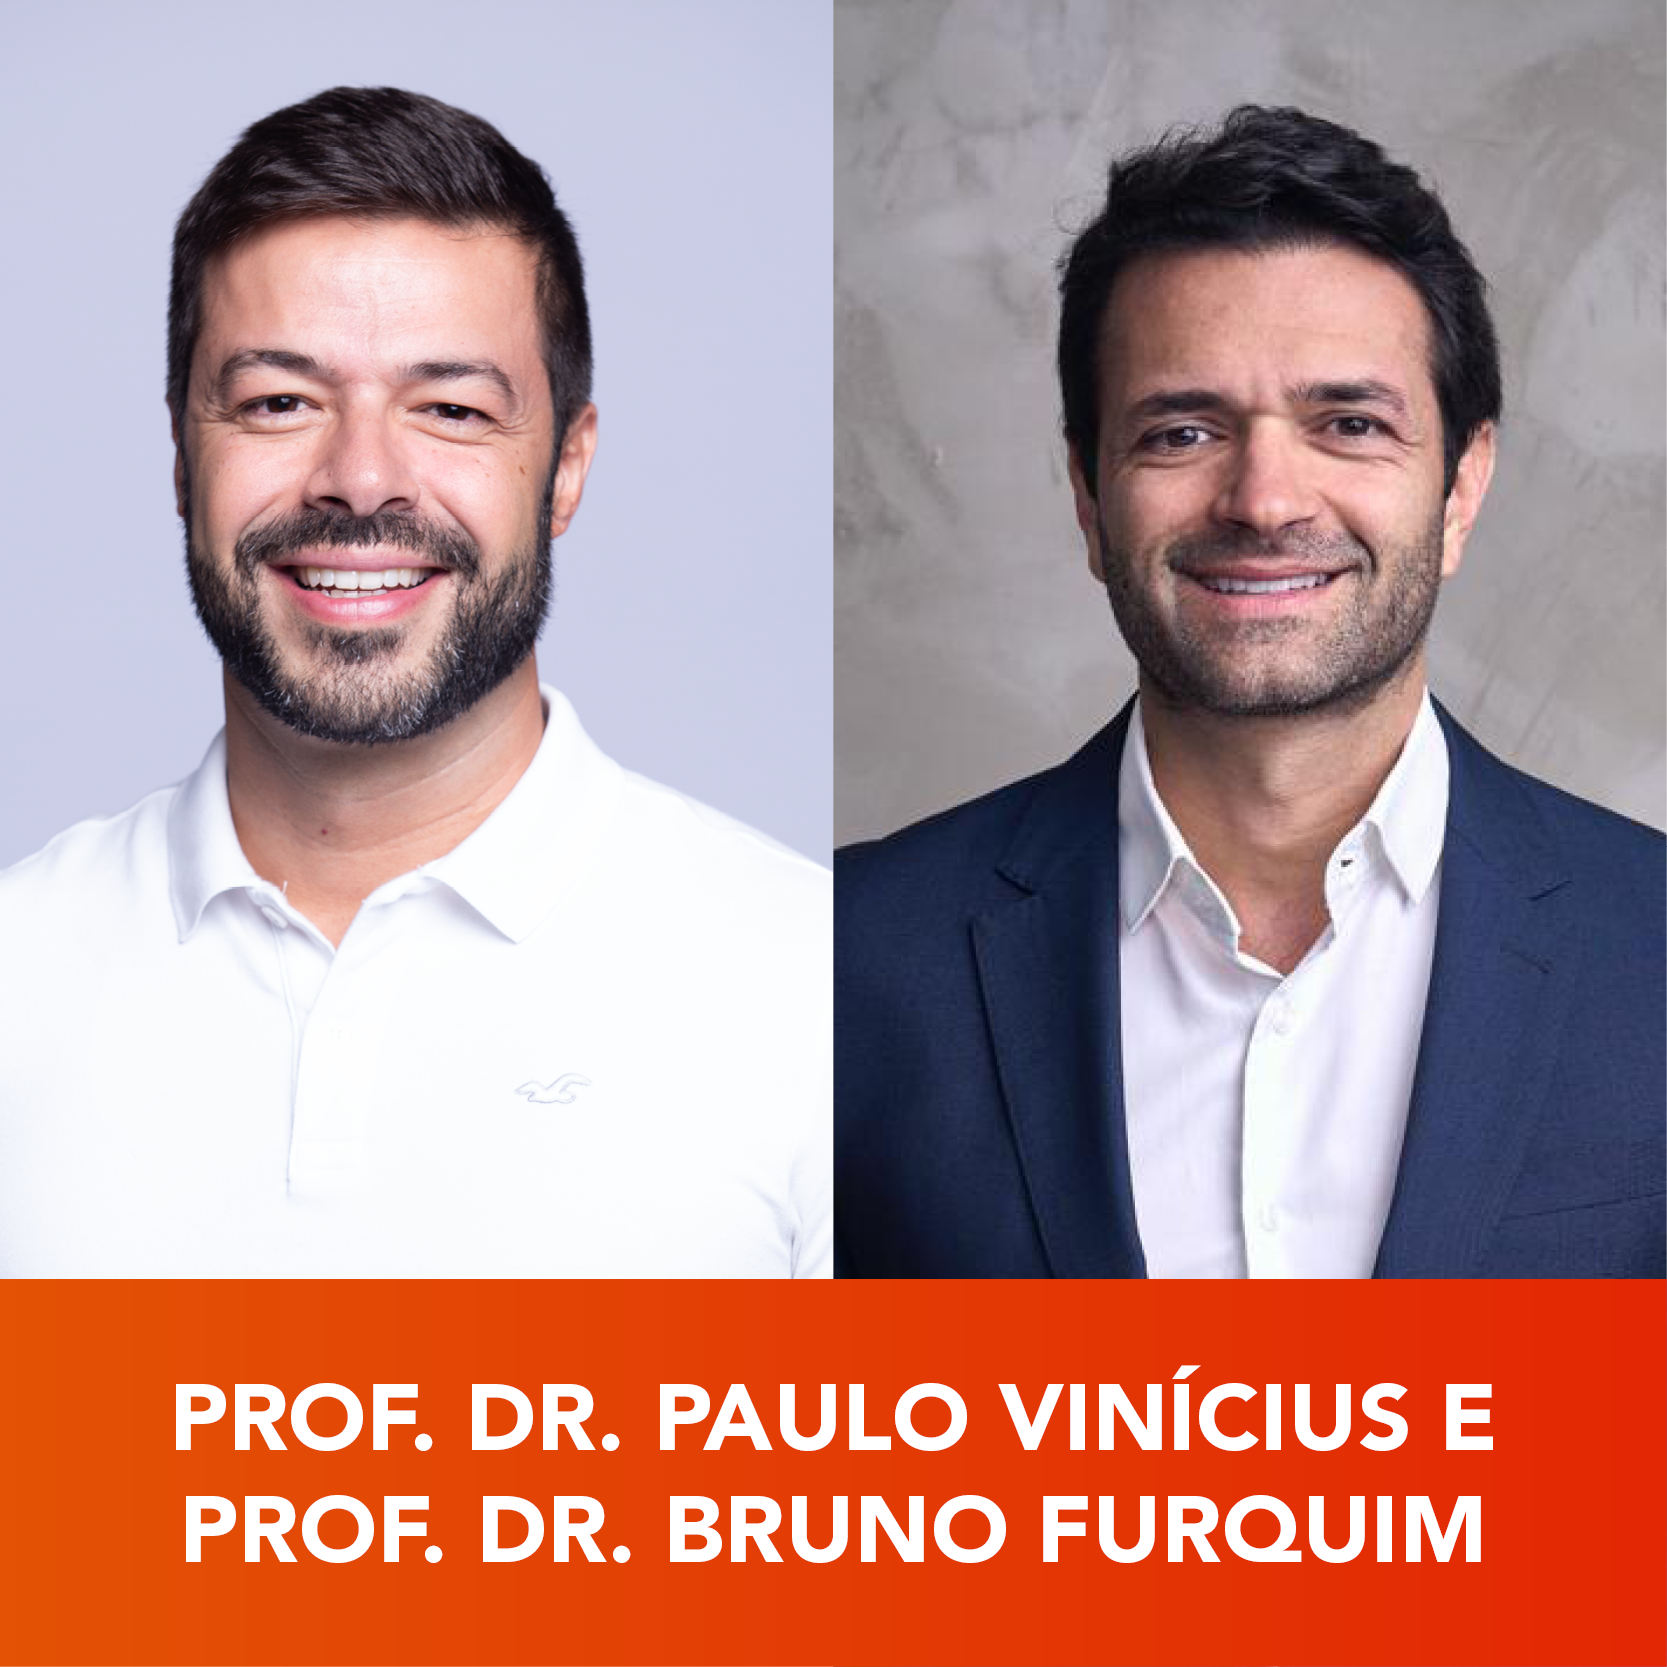 Paulo Vinícius e Bruno Furquim